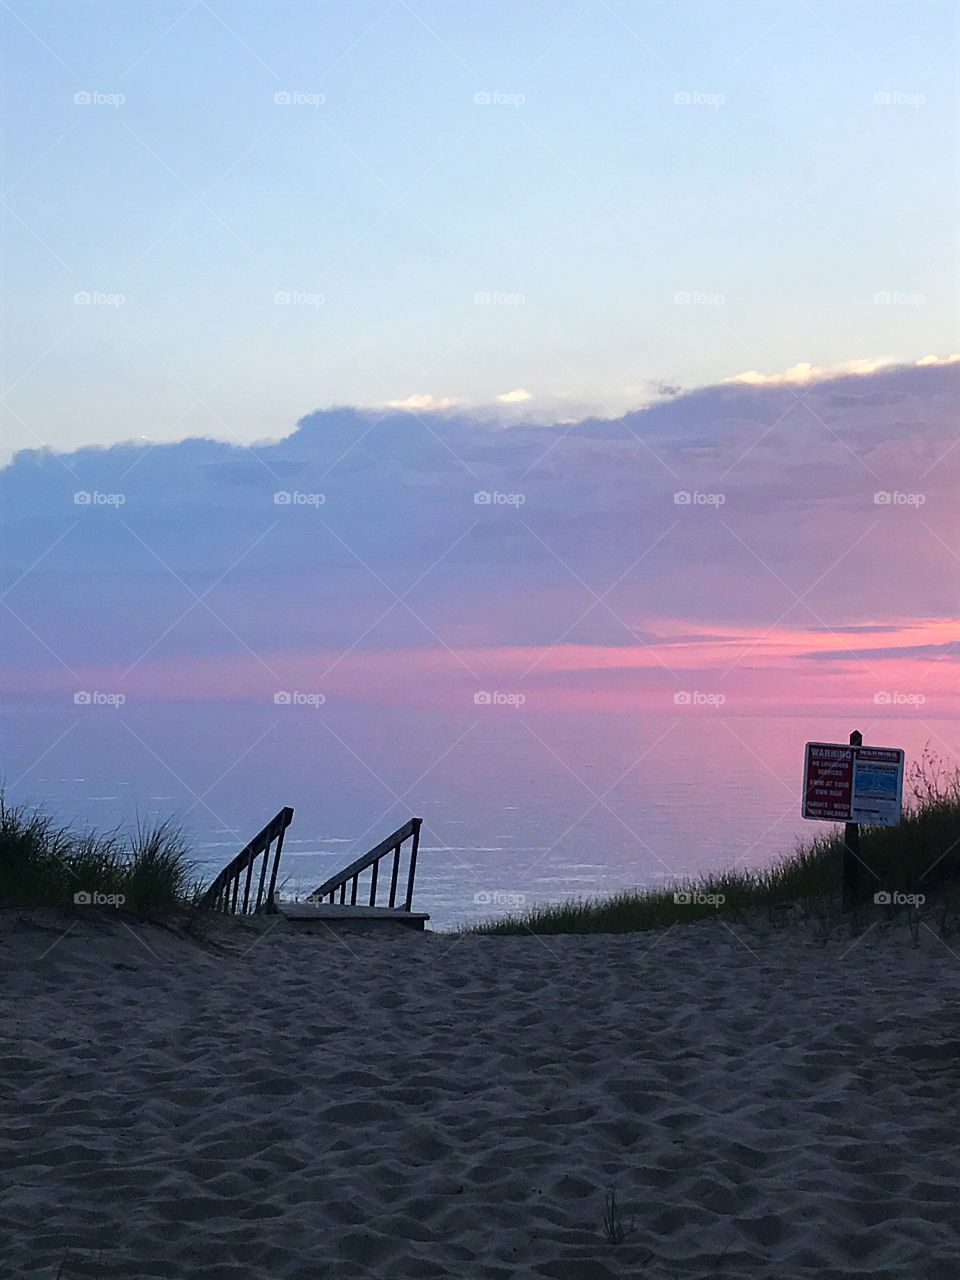 Sunset by the beach Lake Michigan 